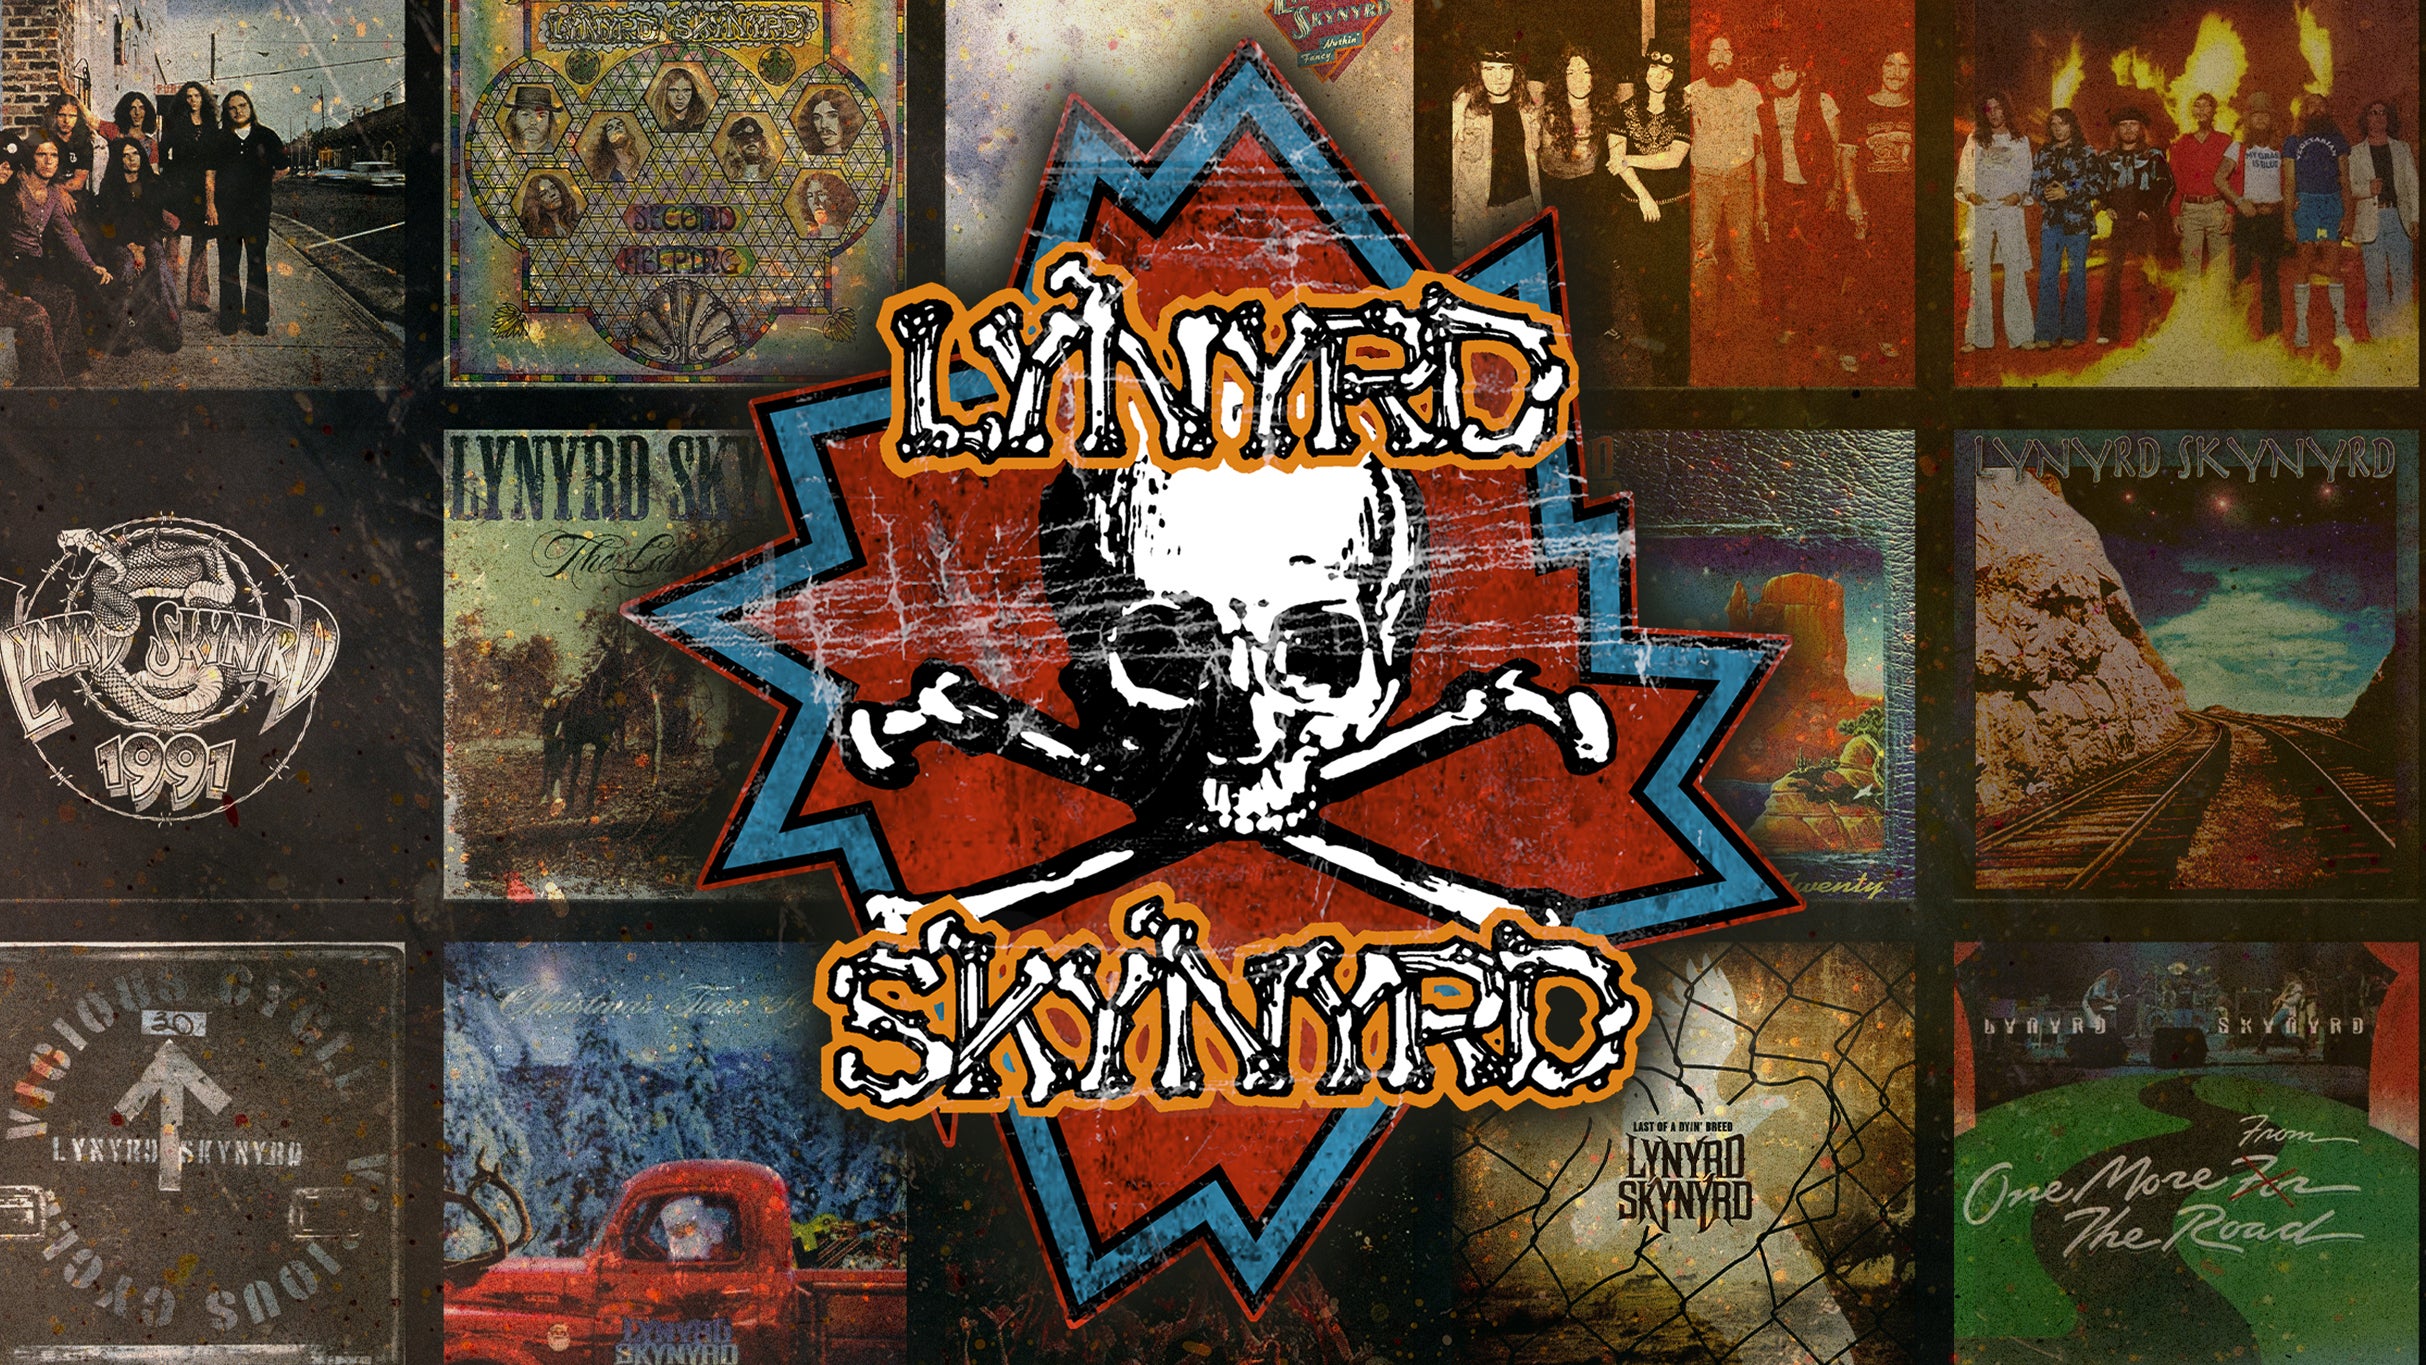 Lynyrd Skynyrd w/ ZZ Top at Fiddlers Green Amphitheatre - Englewood, CO 80111